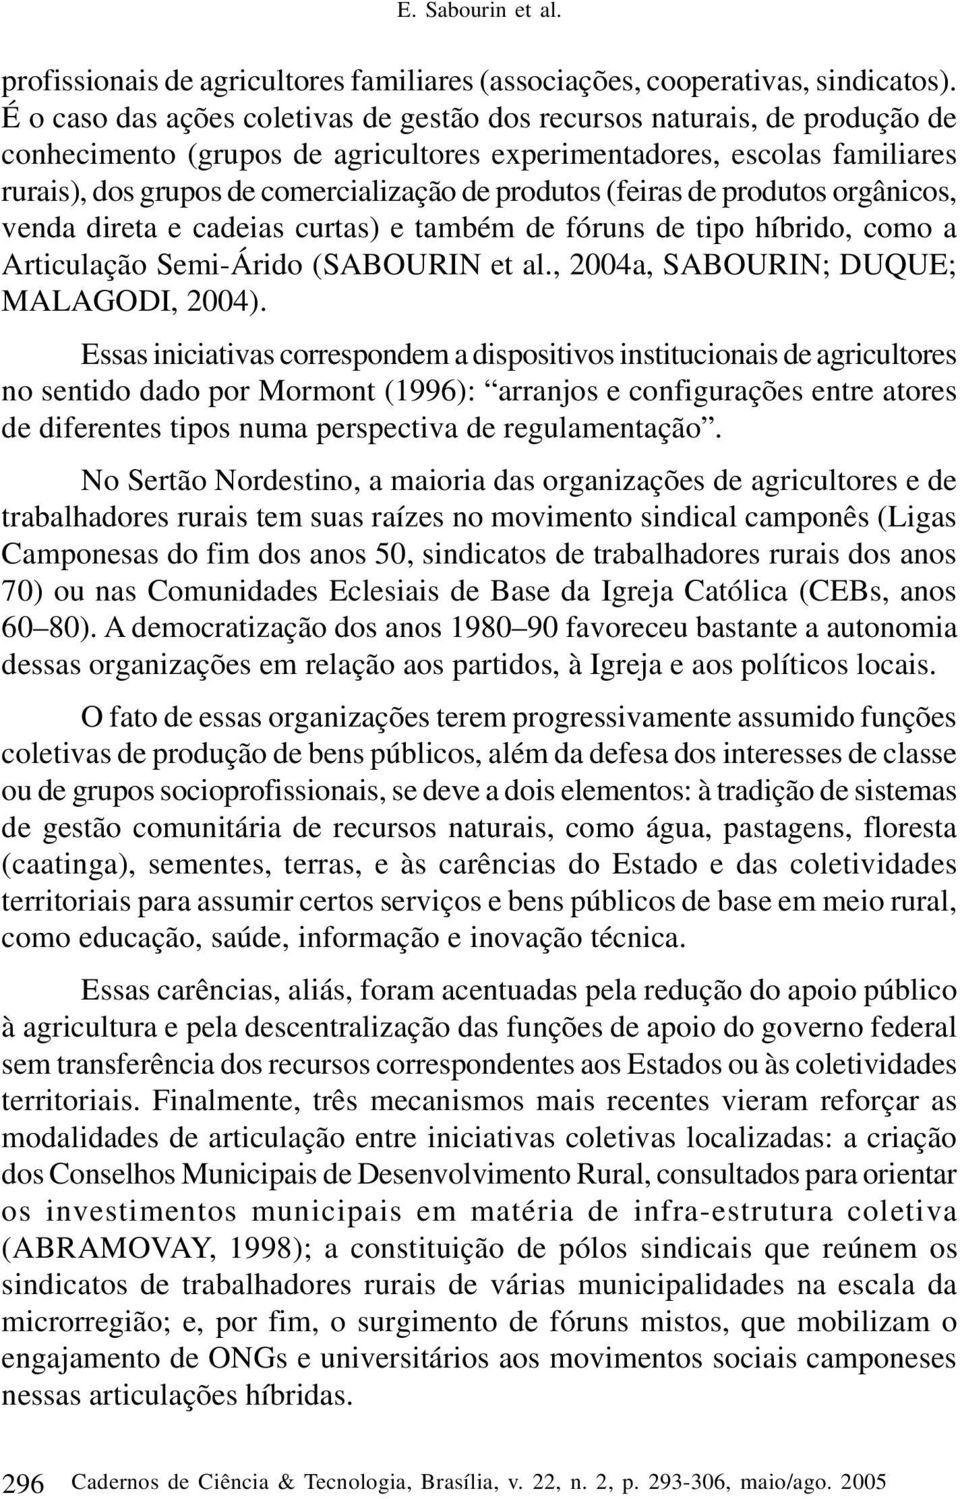 produtos (feiras de produtos orgânicos, venda direta e cadeias curtas) e também de fóruns de tipo híbrido, como a Articulação Semi-Árido (SABOURIN et al., 2004a, SABOURIN; DUQUE; MALAGODI, 2004).